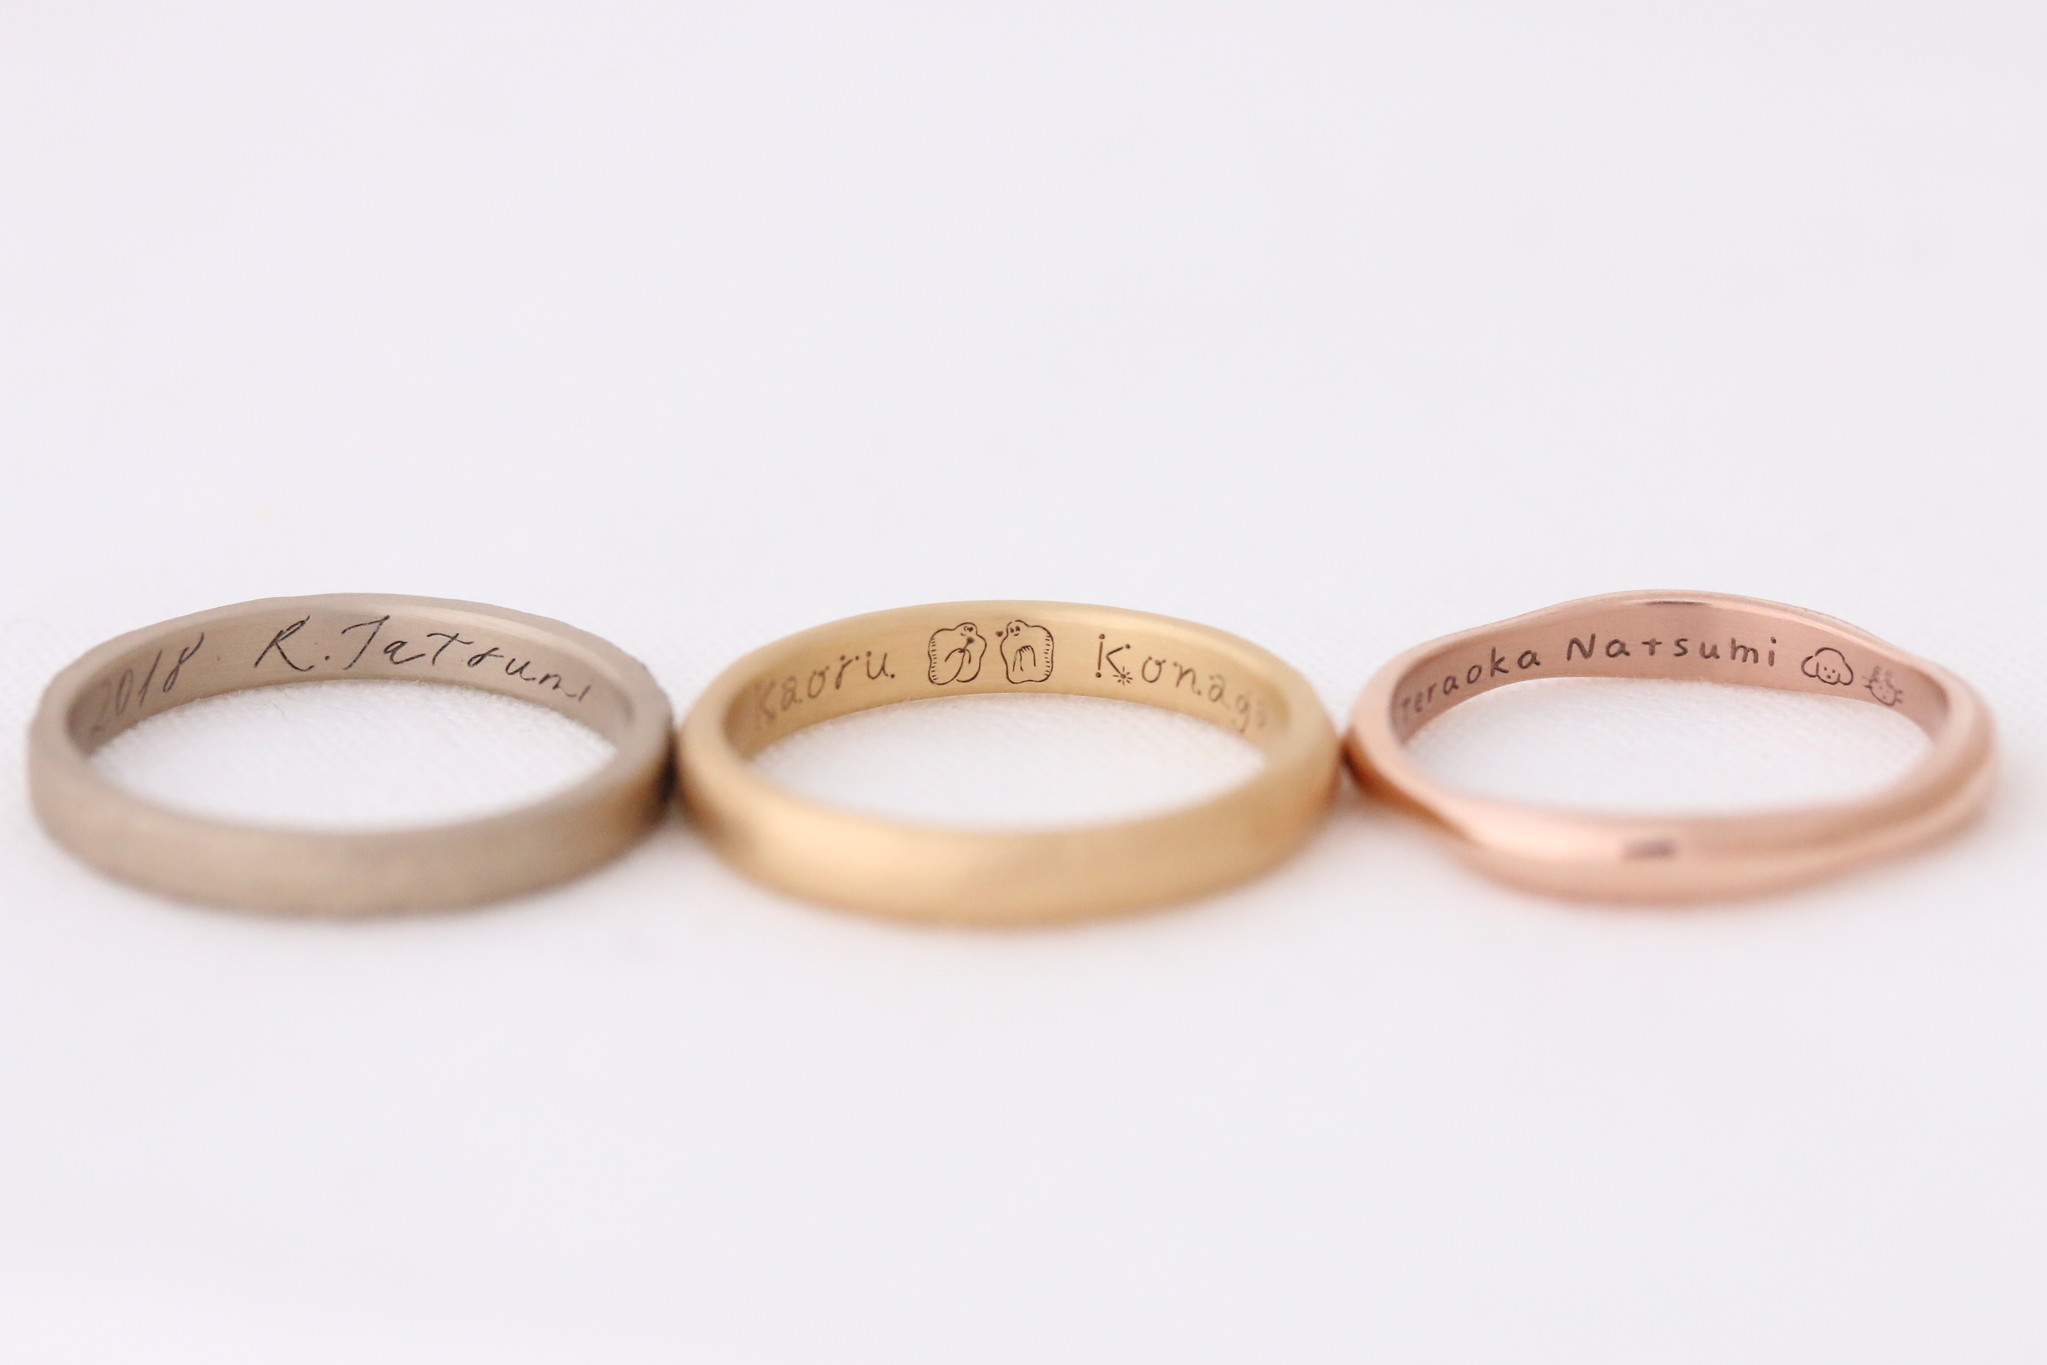 Uchimariオリジナルフォントを結婚指輪に刻印できる アーティスト刻印 がスタート 株式会社encochiのプレスリリース